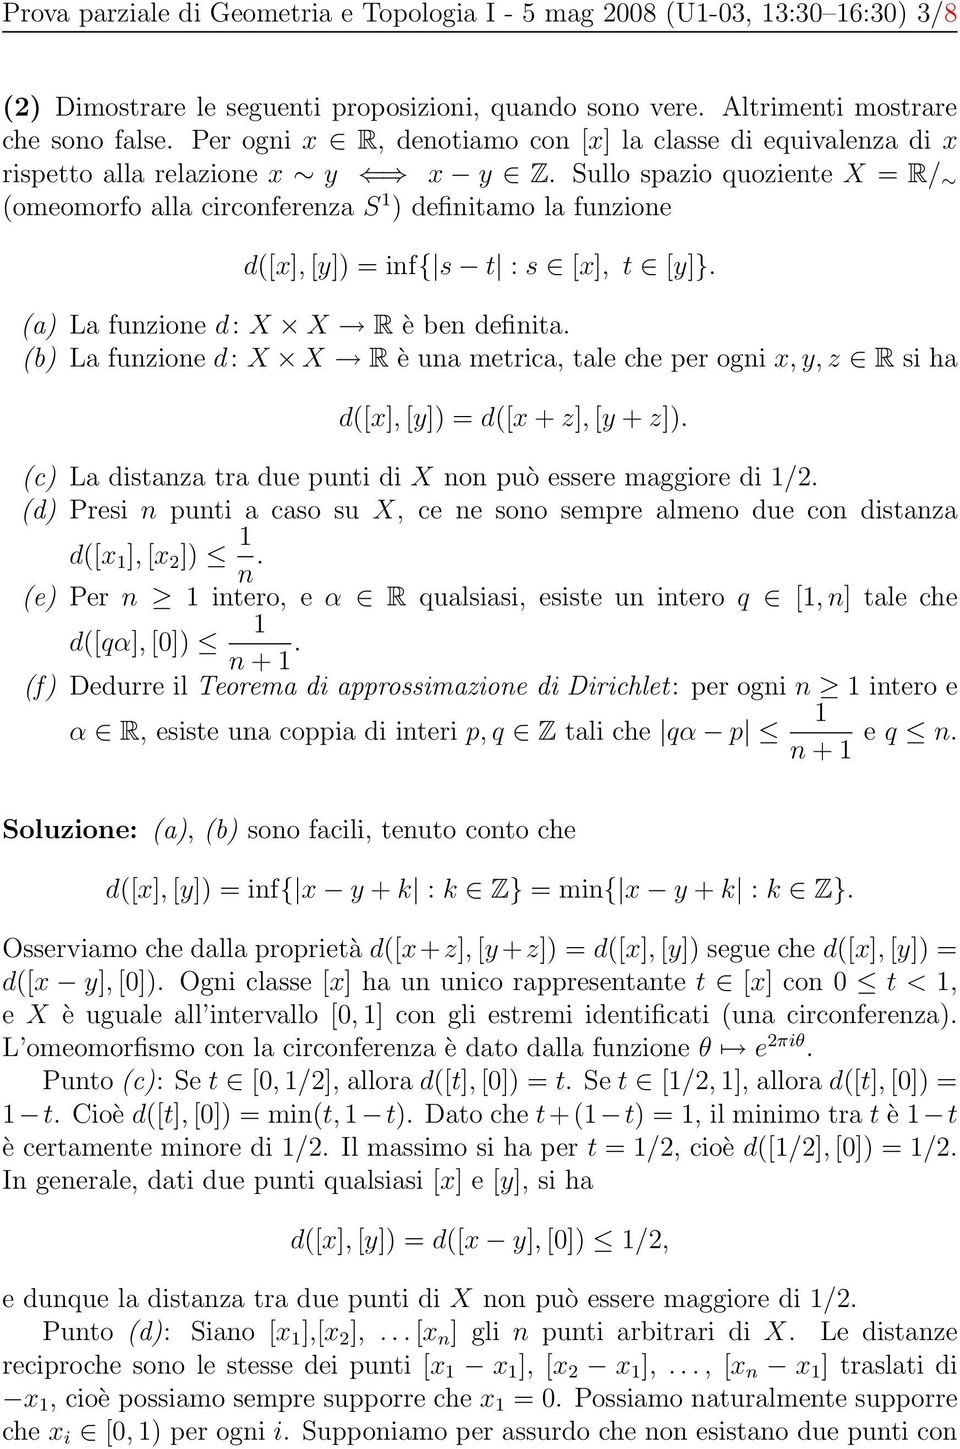 Sullo spazio quoziente X = R/ (omeomorfo alla circonferenza S 1 ) definitamo la funzione d([x], [y]) = inf{ s t : s [x], t [y]}. (a) La funzione d: X X R è ben definita.